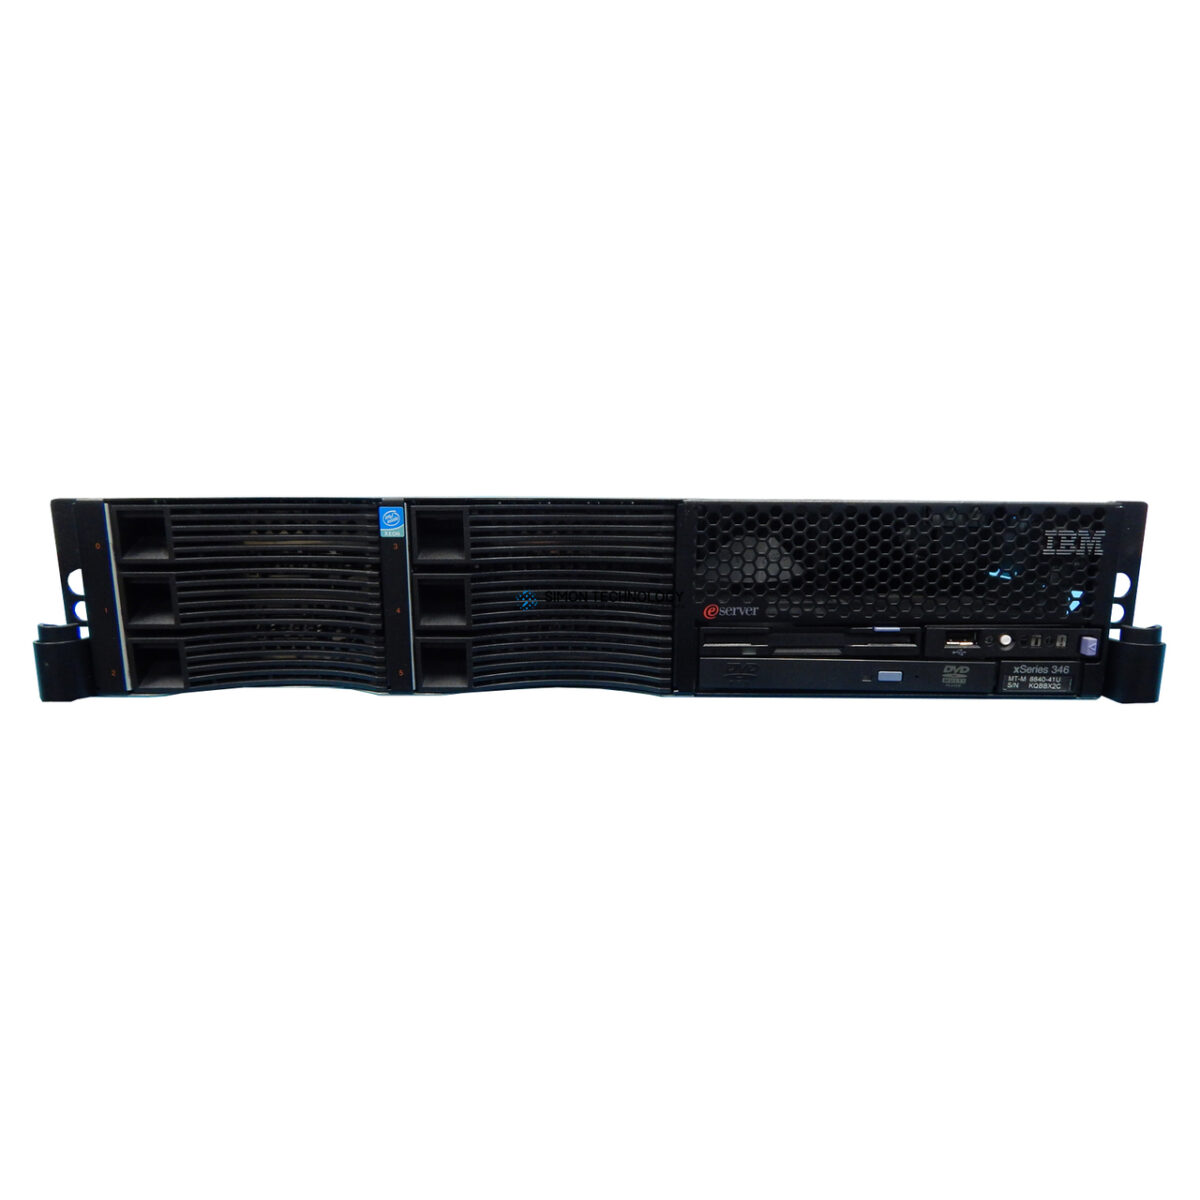 Сервер IBM X-SERIES 346 NO CONFIGURATION (X346-NOCFG)